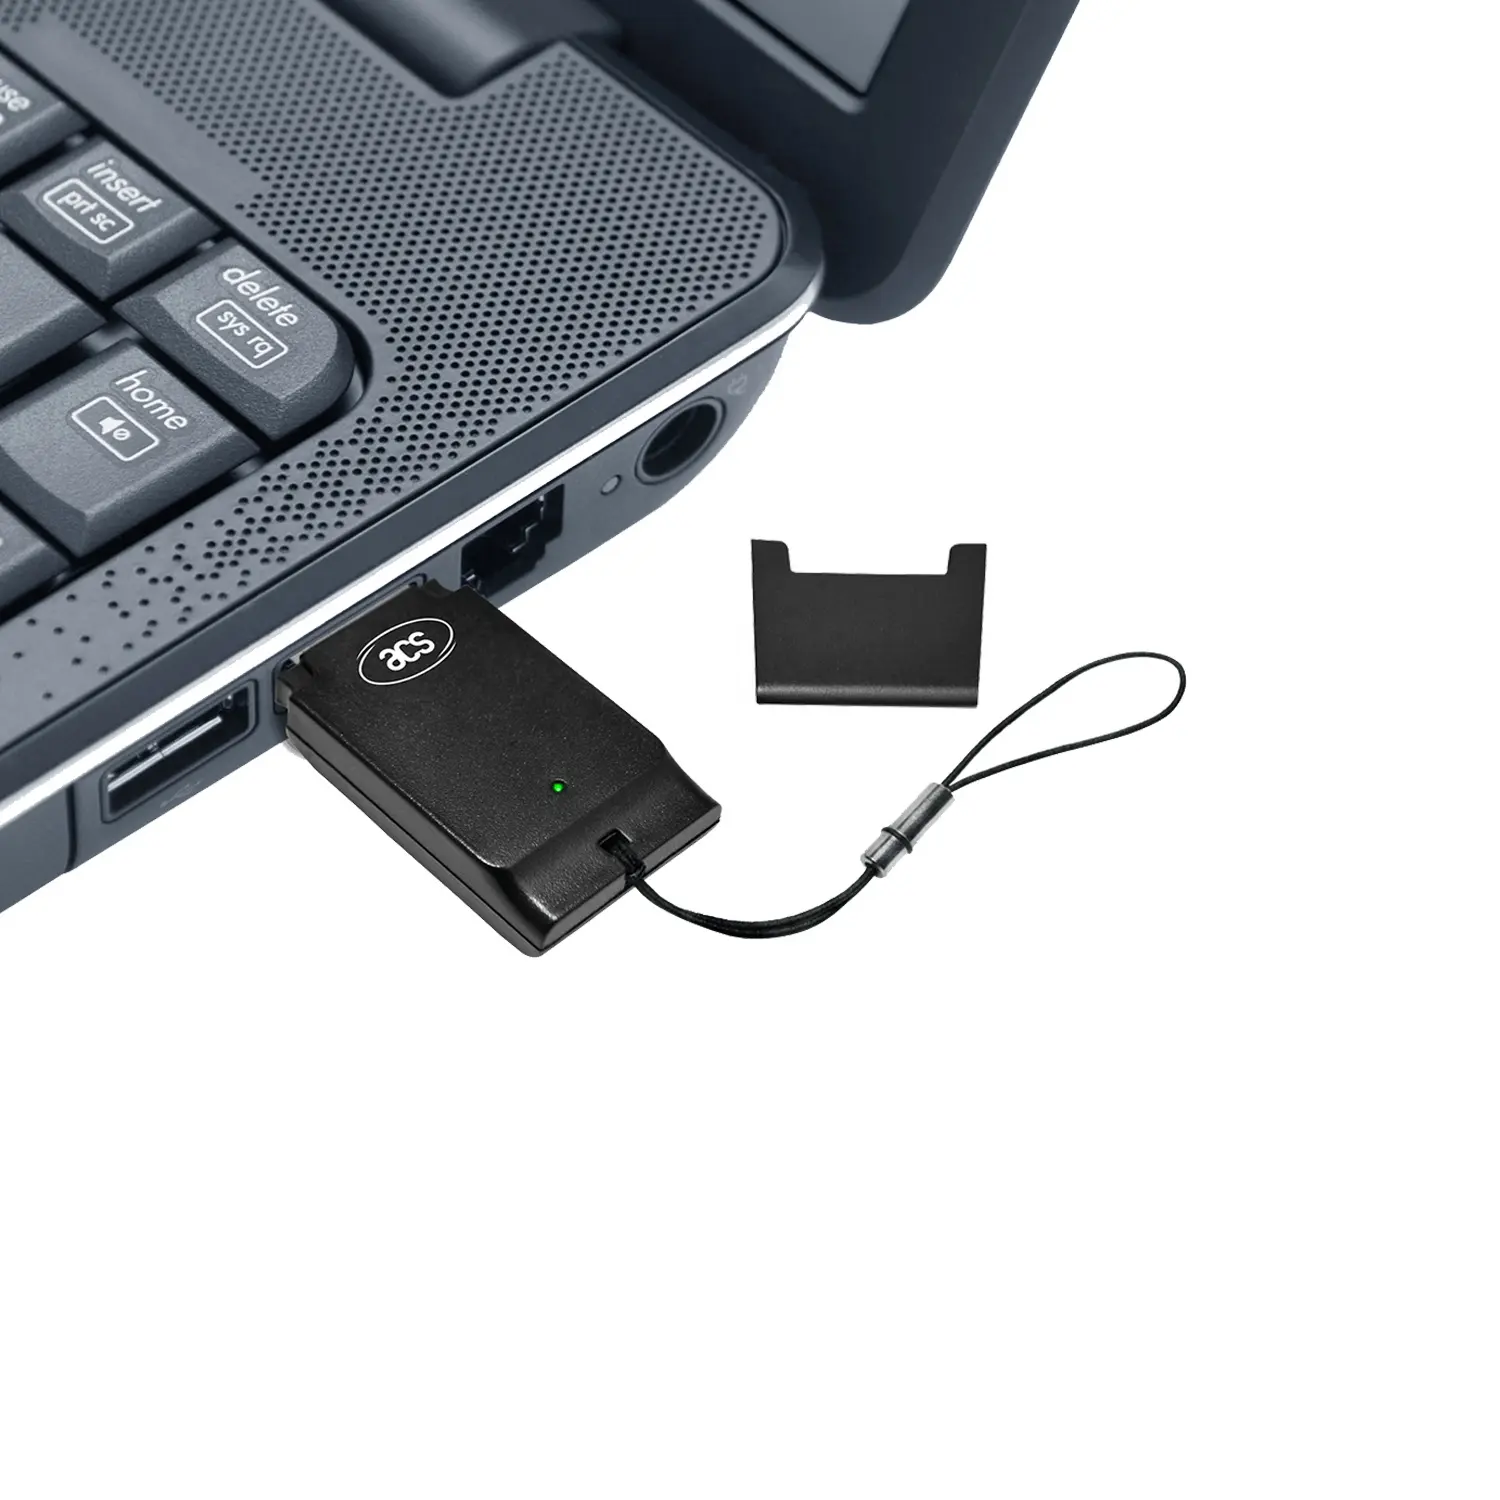 Mac USB 4G Micro Sim Card Reader Writer Per PC ACR39T-A1